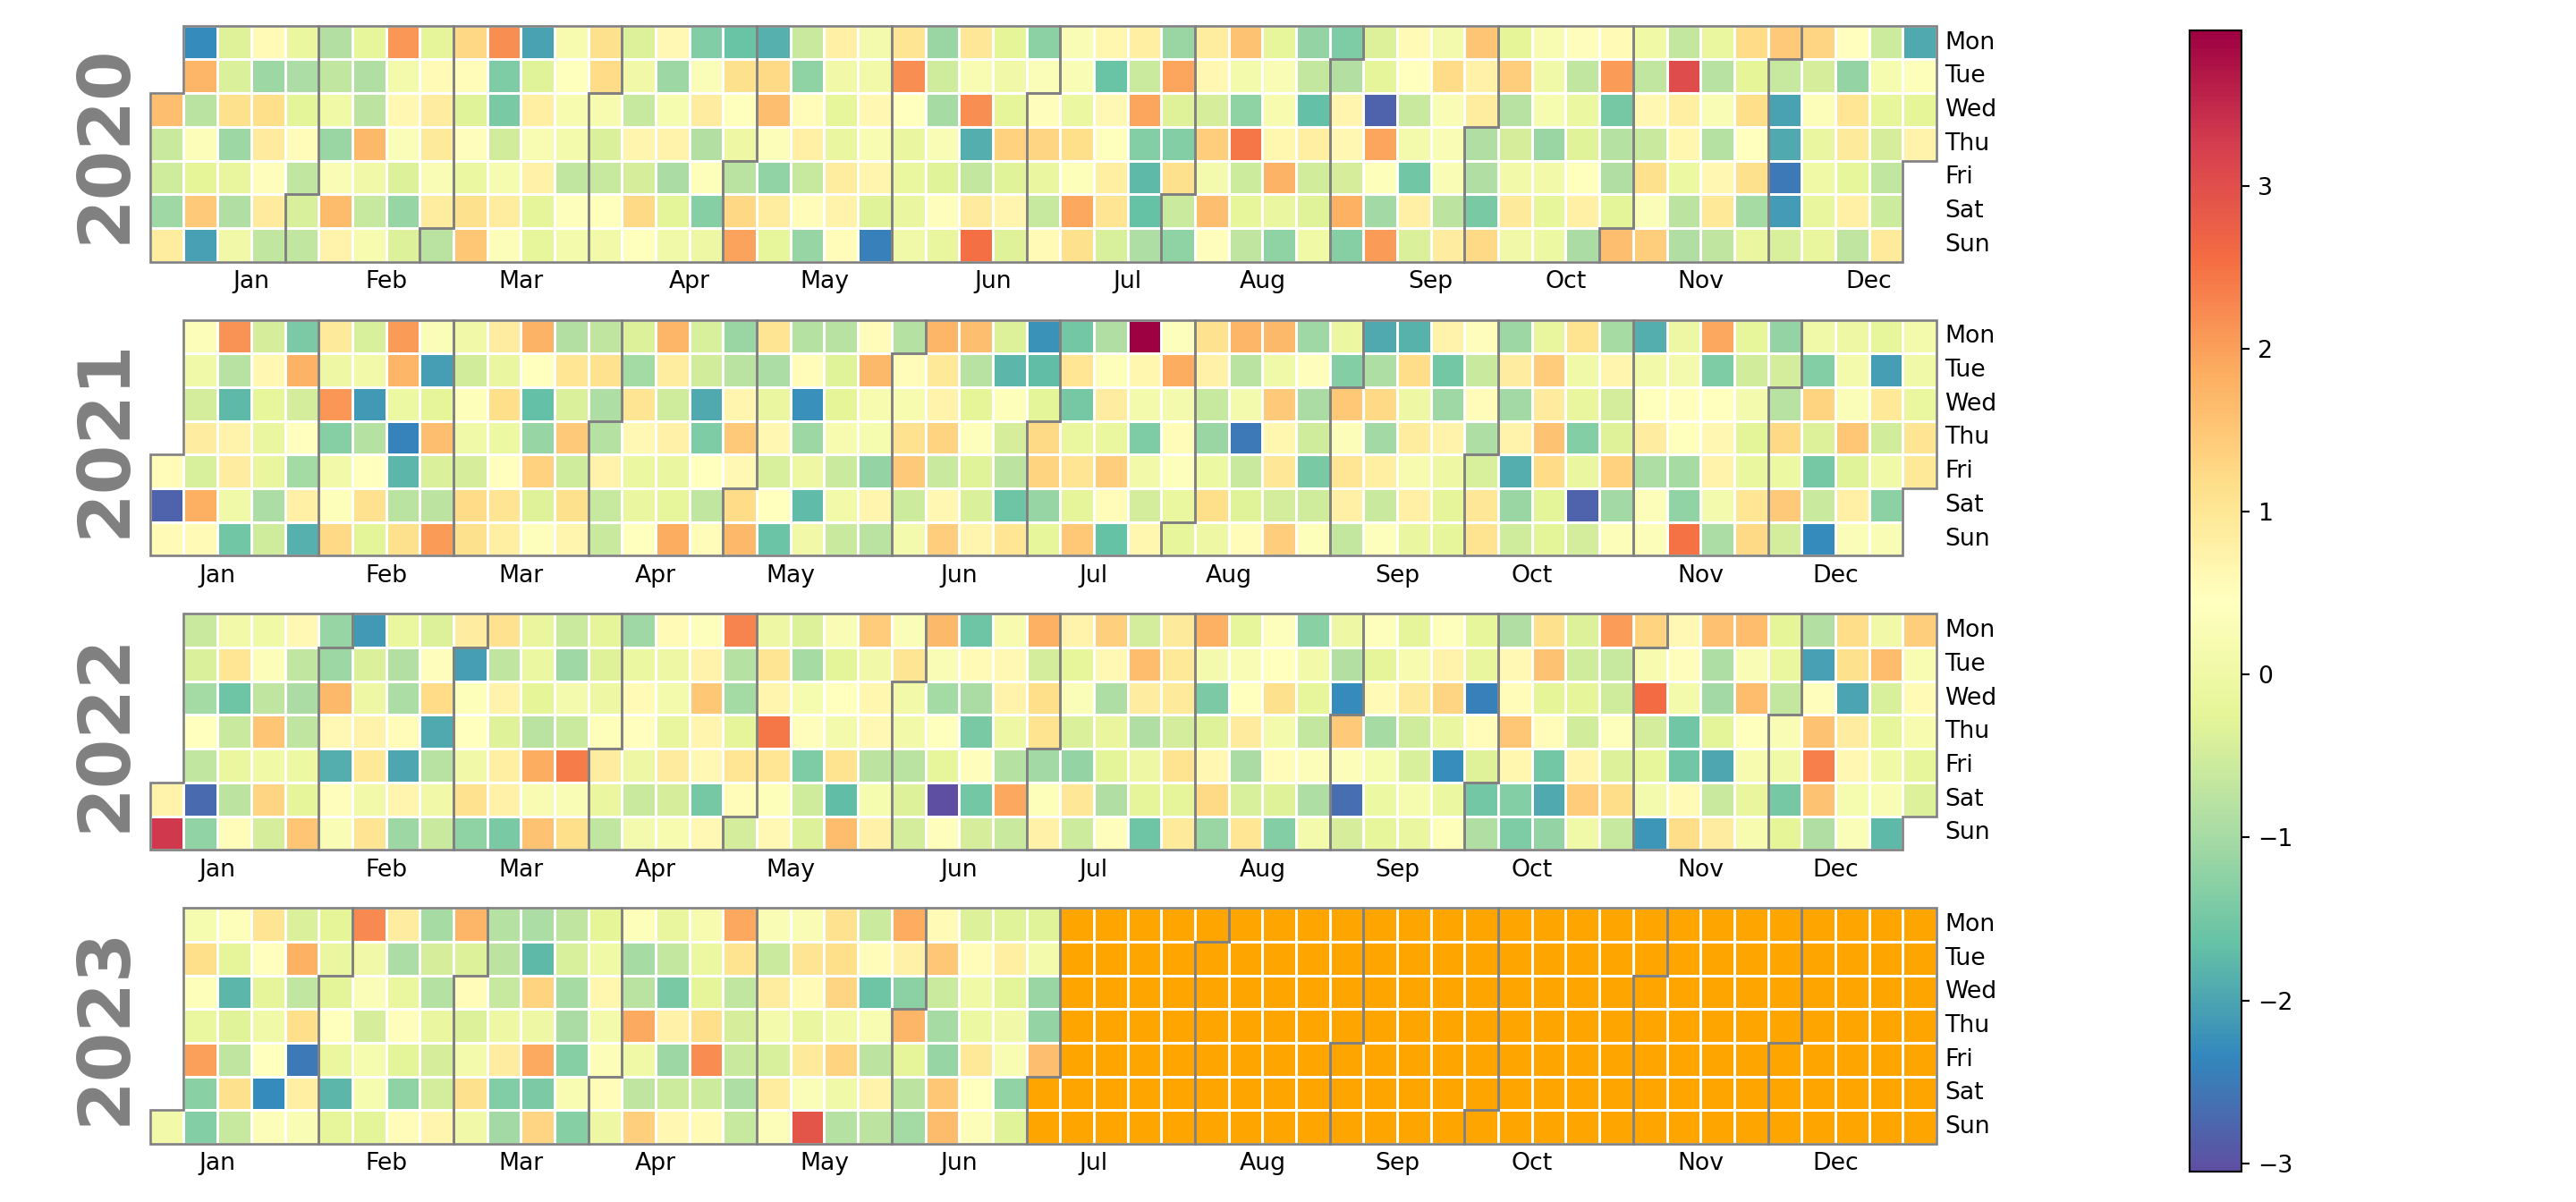 Color de las celdas del calendario de Python sin datos